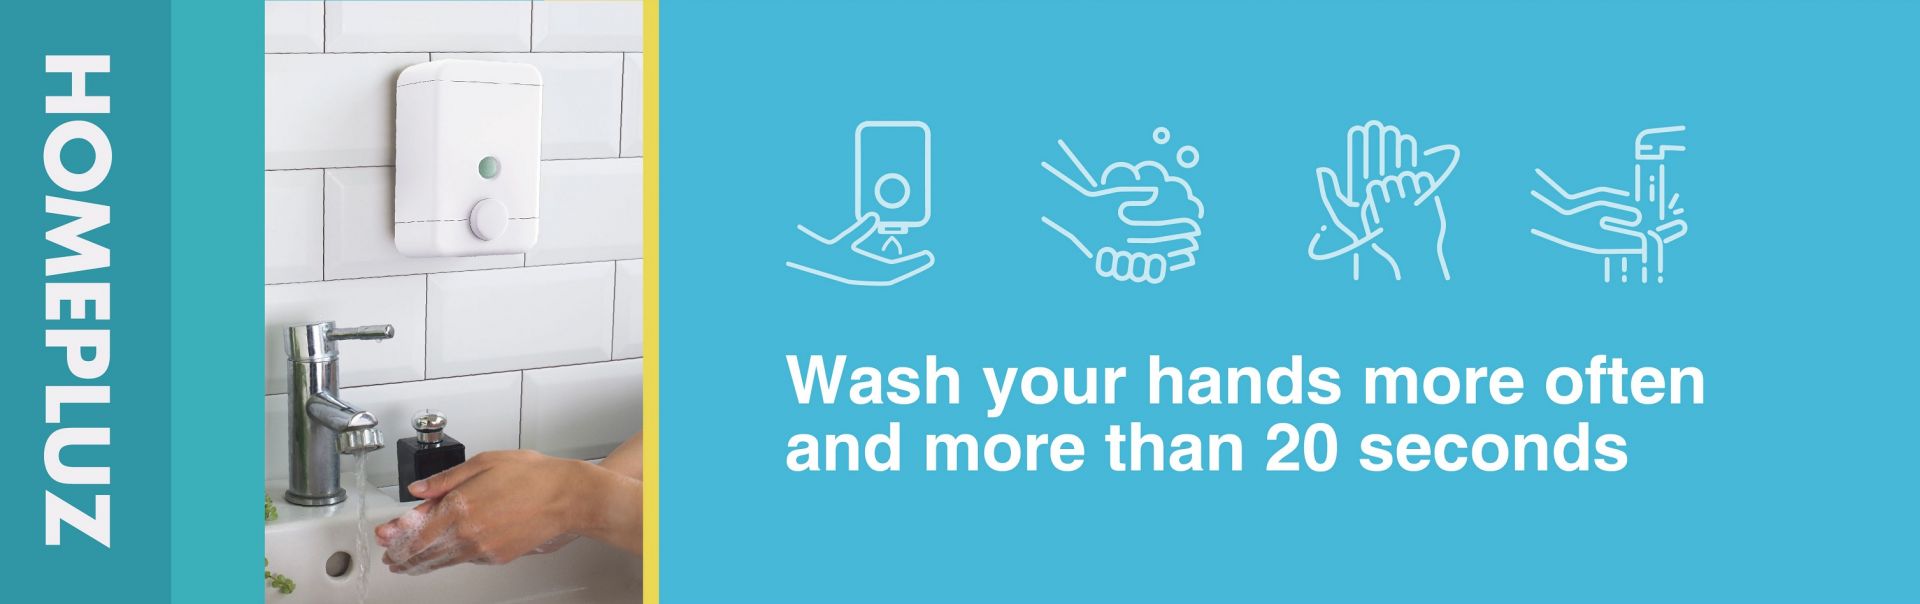 غسل اليدين للابتعاد عن الفيروسات